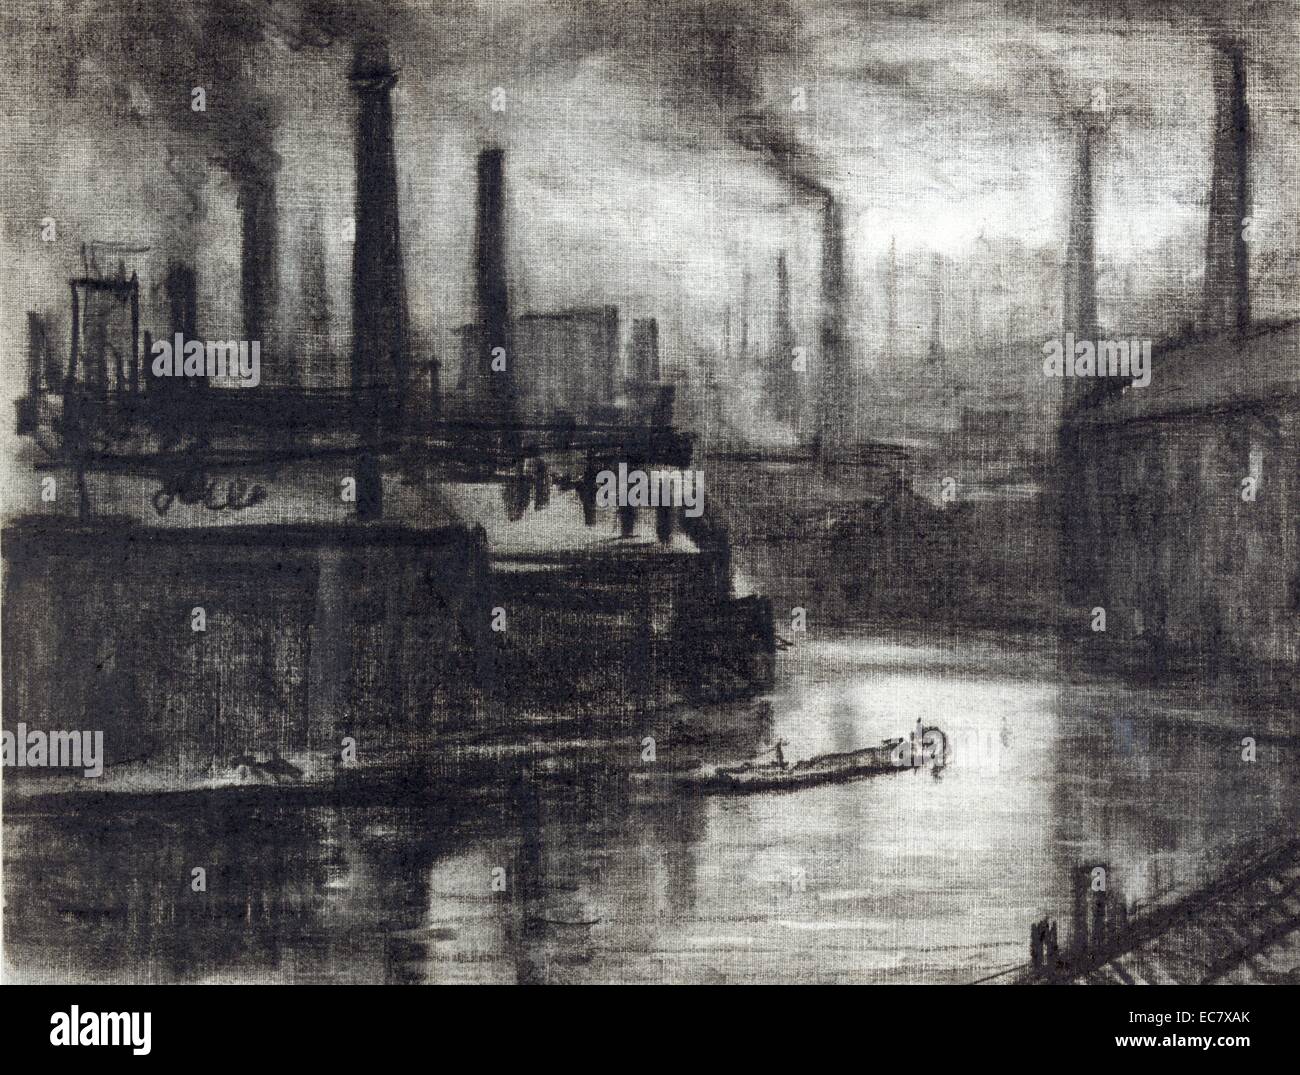 East London von Joseph Pennell, 1857-1926, Künstler im Jahre 1908 gezeichnet. Blick über gekrümmte Fluss, der durch Factory Bezirk, kleines Boot, Vordergrund, Schornsteine aufstoßen schwarzer Rauch darüber hinaus und in der Ferne. Stockfoto